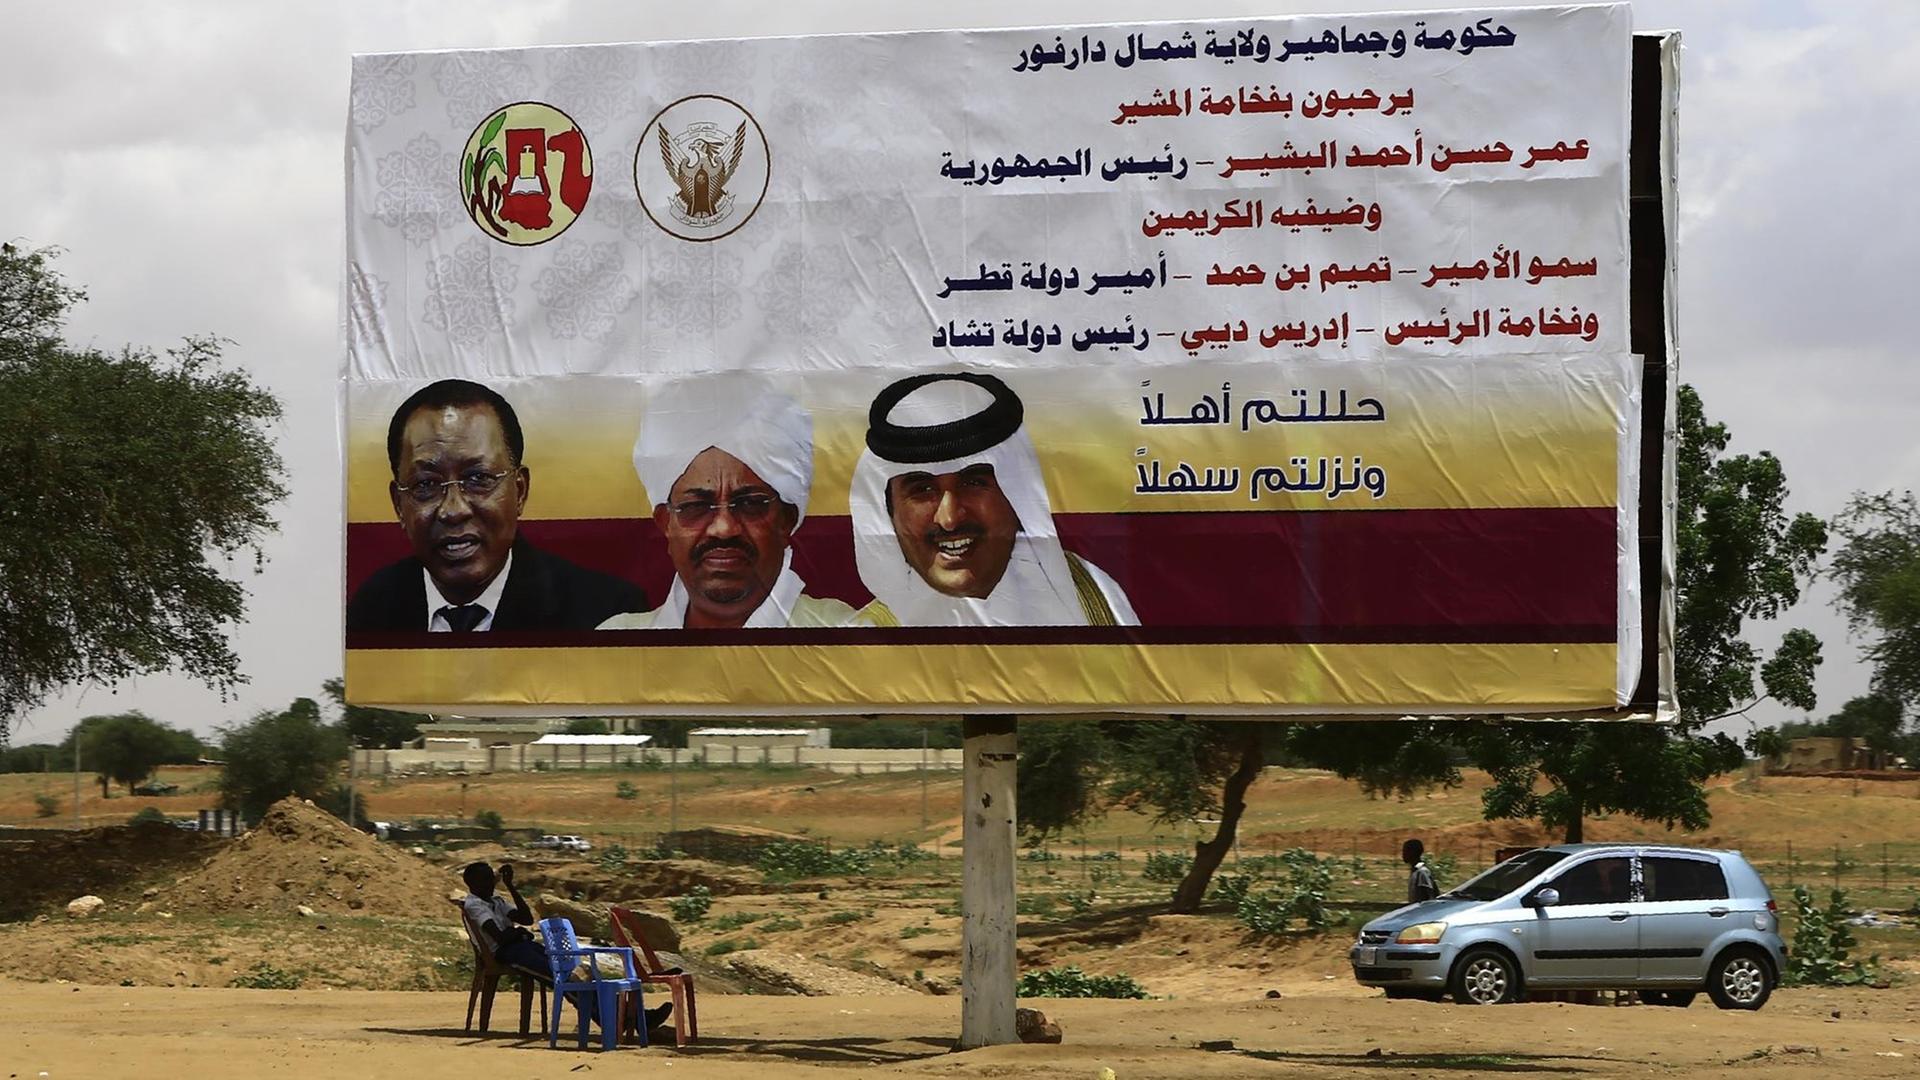 Sudanesische Männer sitzen vor einem Plakat mit den Bildern des sudanesischen Präsidenten Omar al-Bashir (Mitte), dem katarischen Emir Sheikh Tamim bin Hamad al-Thani (r.) und dem Präsidenten des Tschad Idriss Deby (l.) in der El Fasher (Darfur) am 5. September 2016, bevor die politischen Anführer die Gegend besuchen.